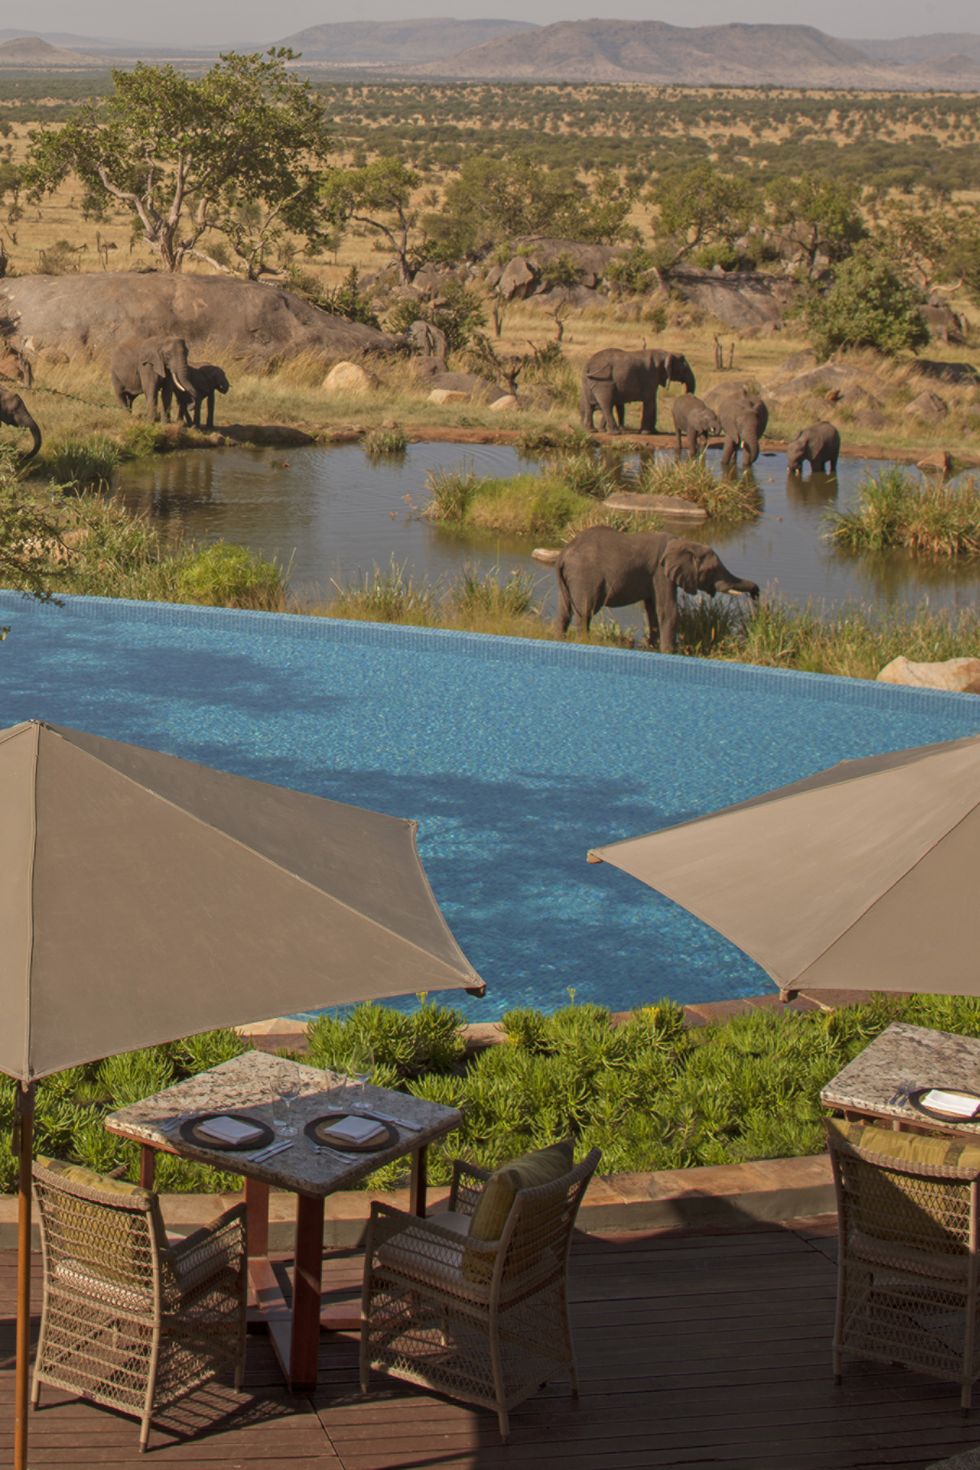 The pool at Four Seasons Safari Lodge in Tanzania